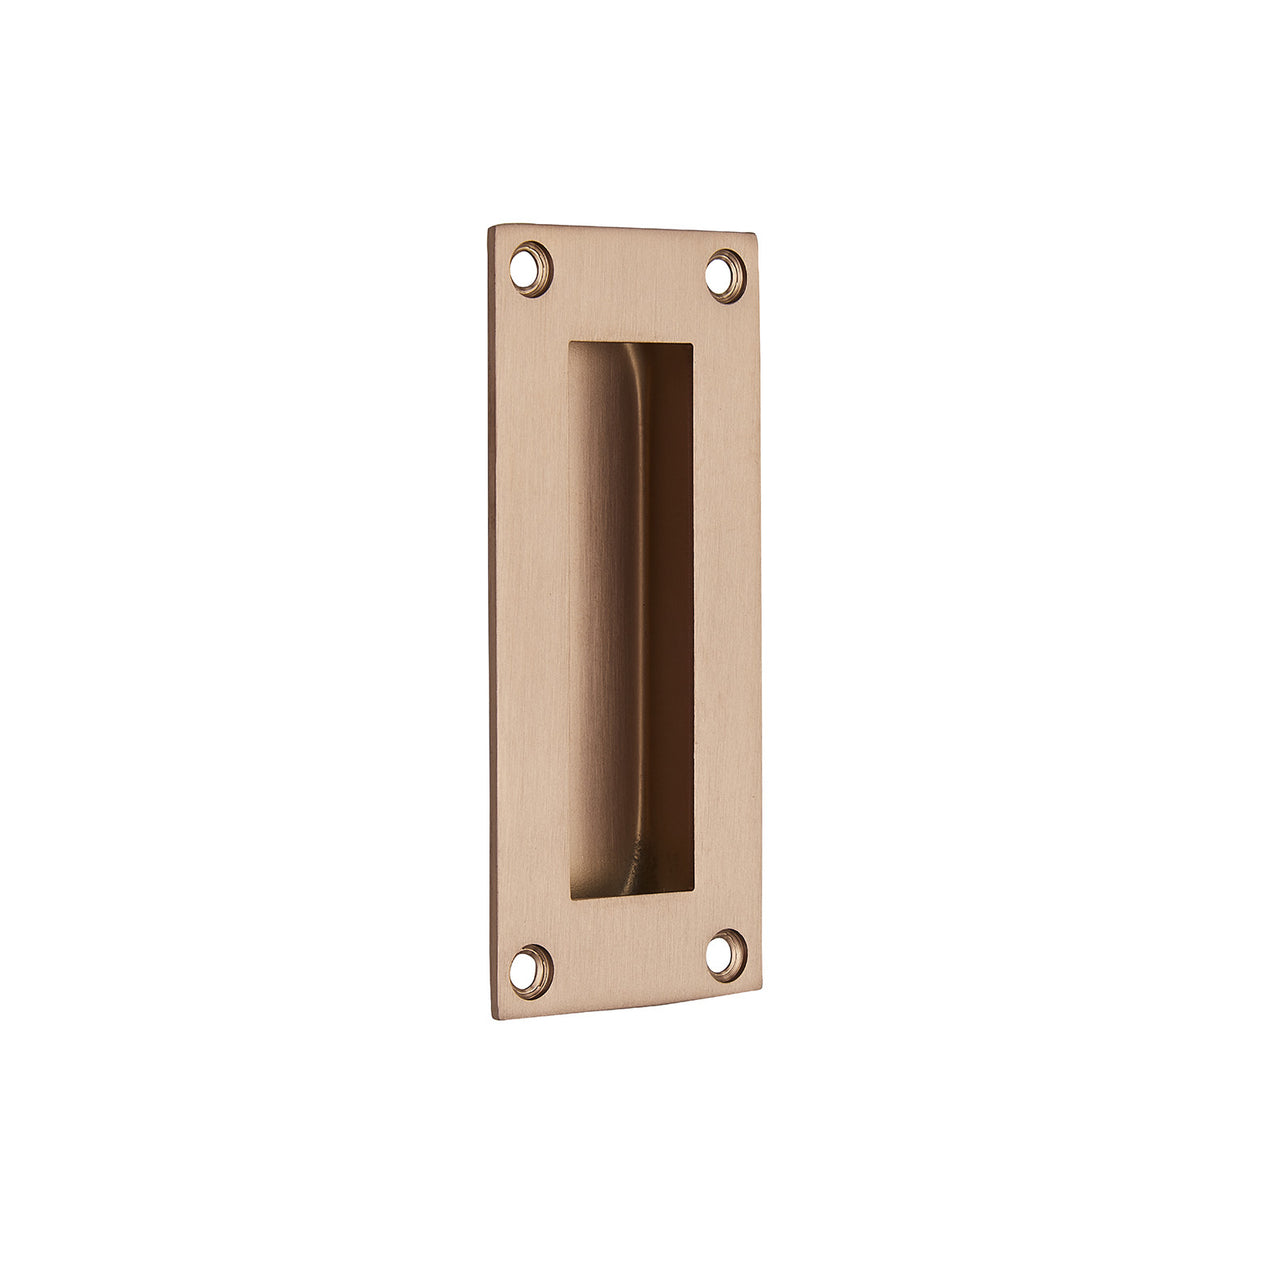 Copper flush door handle